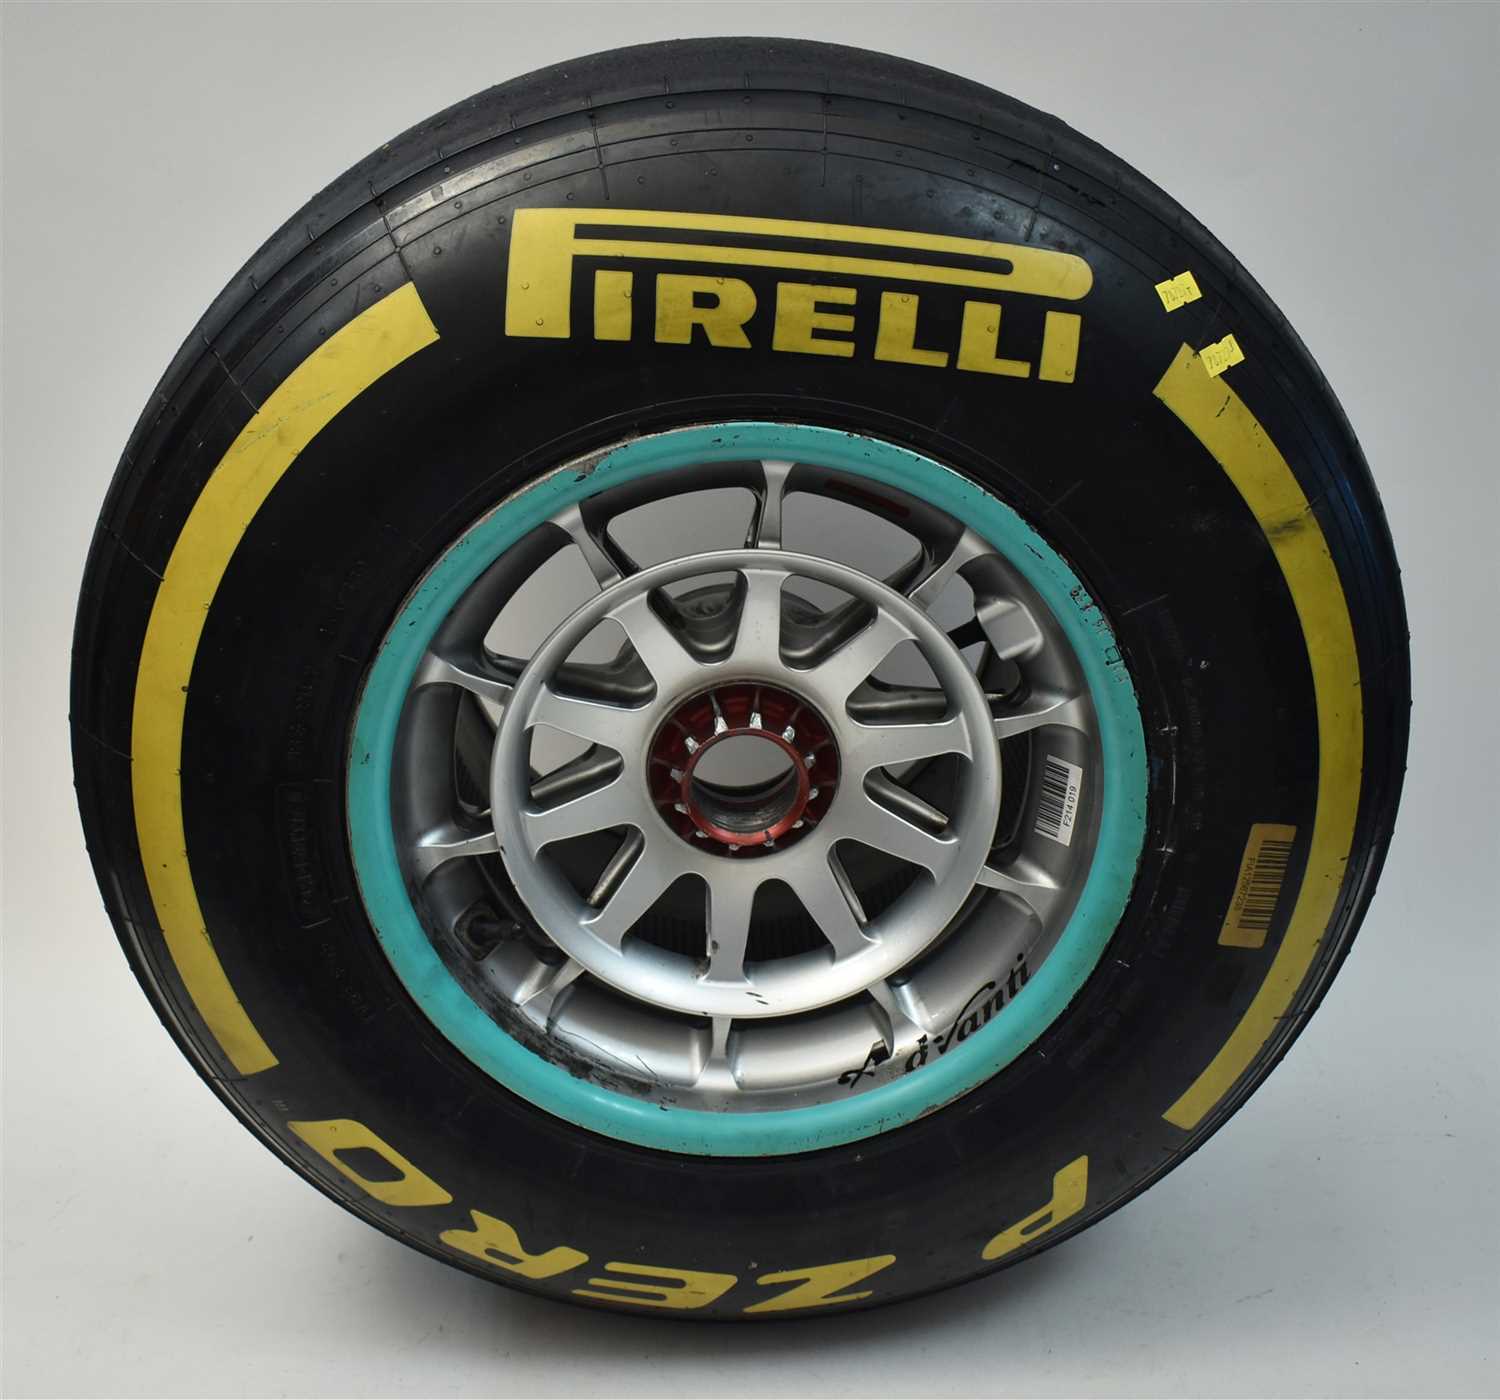 Lot 304 - Lewis Hamilton's Formula 1 tyre